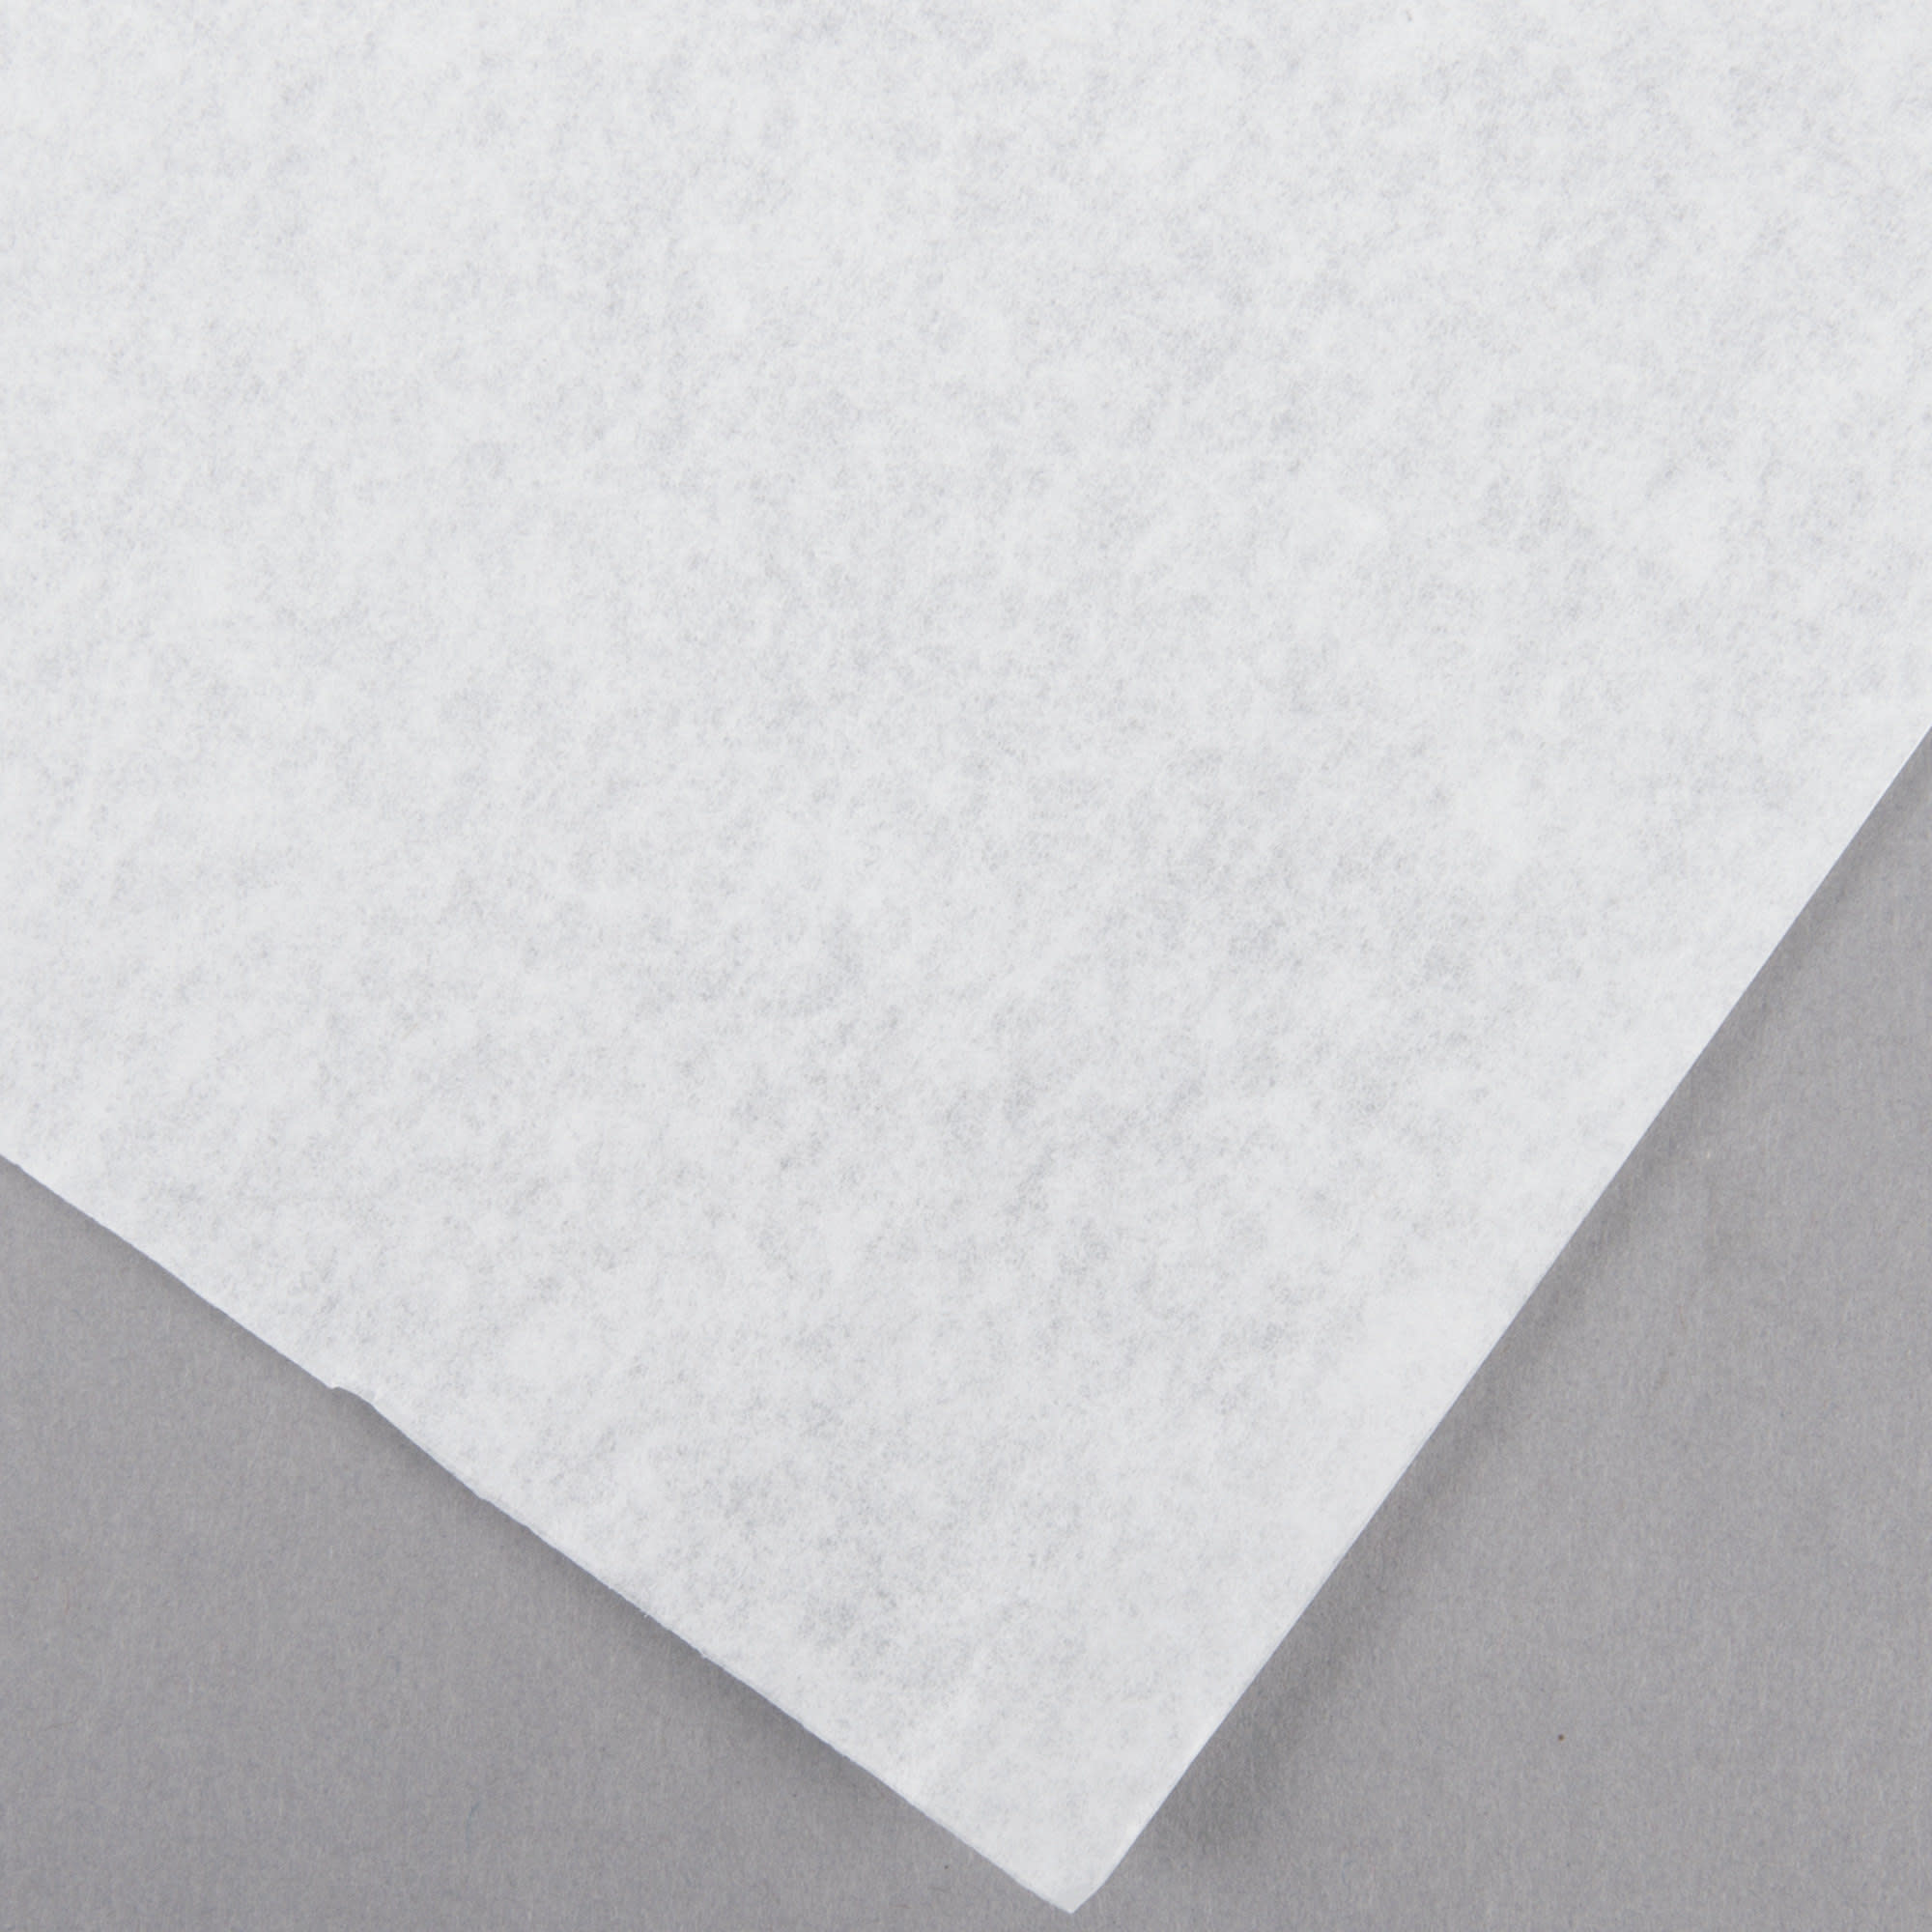 Parchment Paper Half Sheet